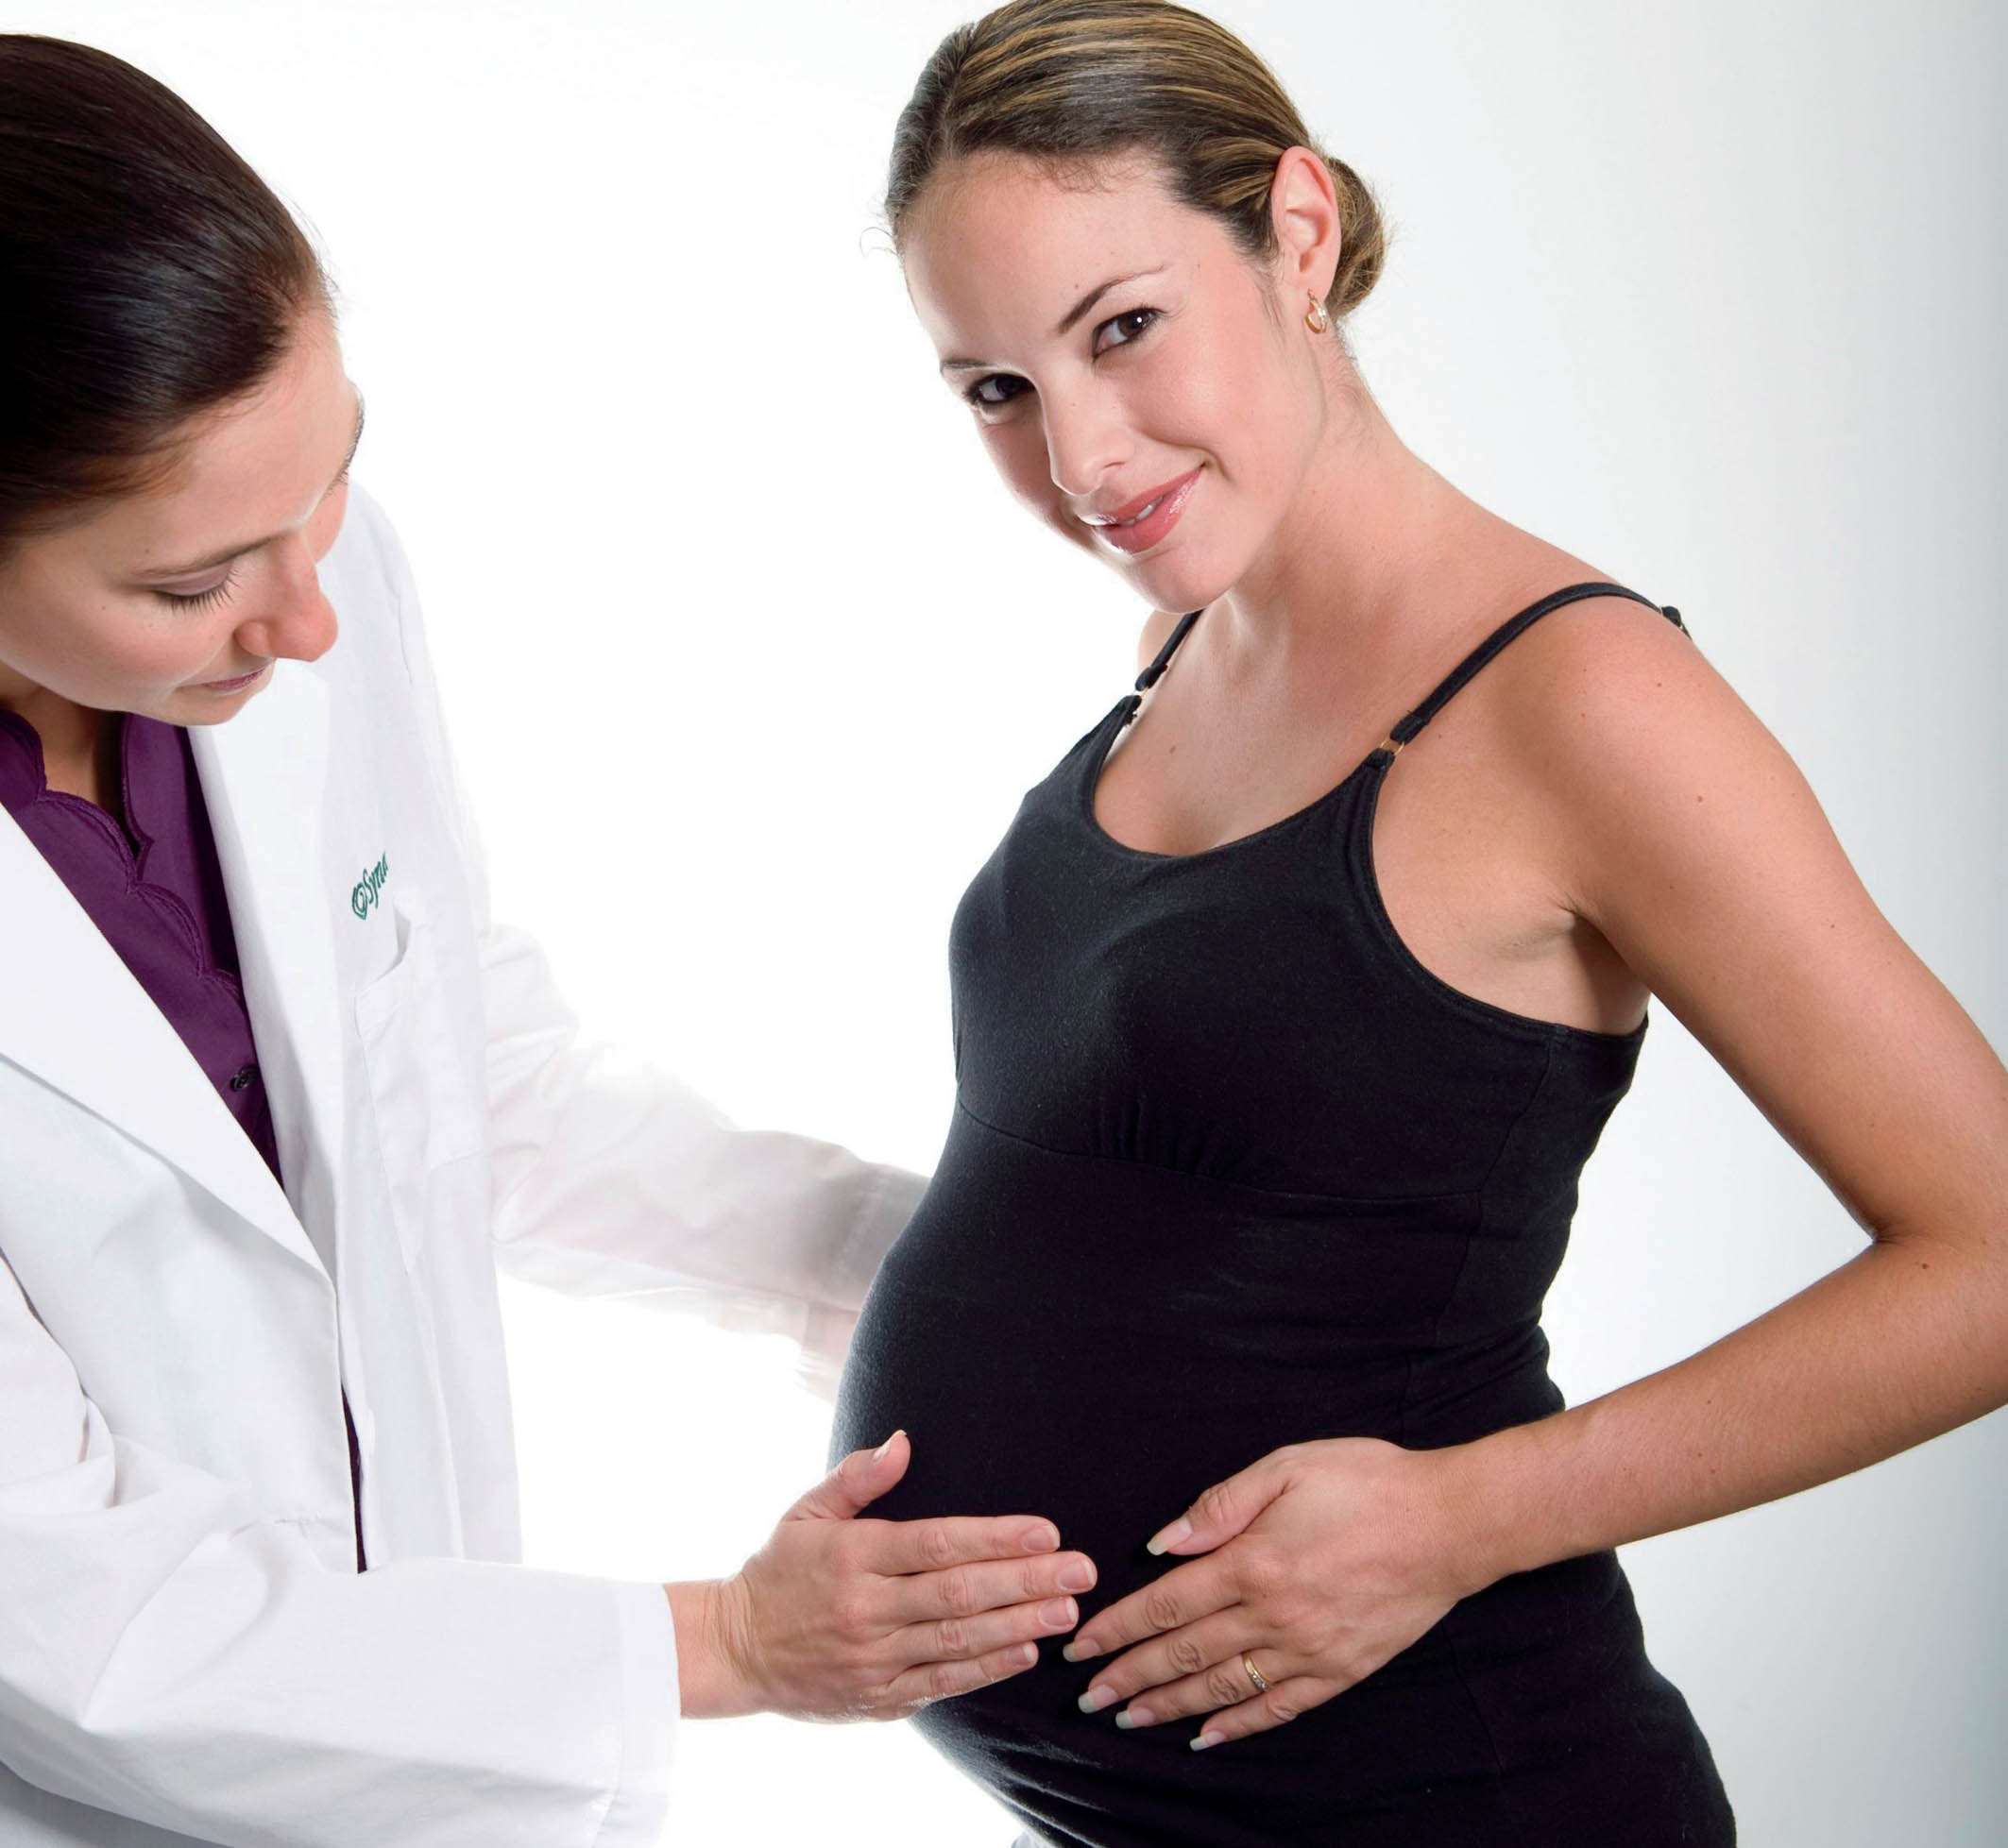 Беременным женщинам лучше избегать посещения ИК сауны